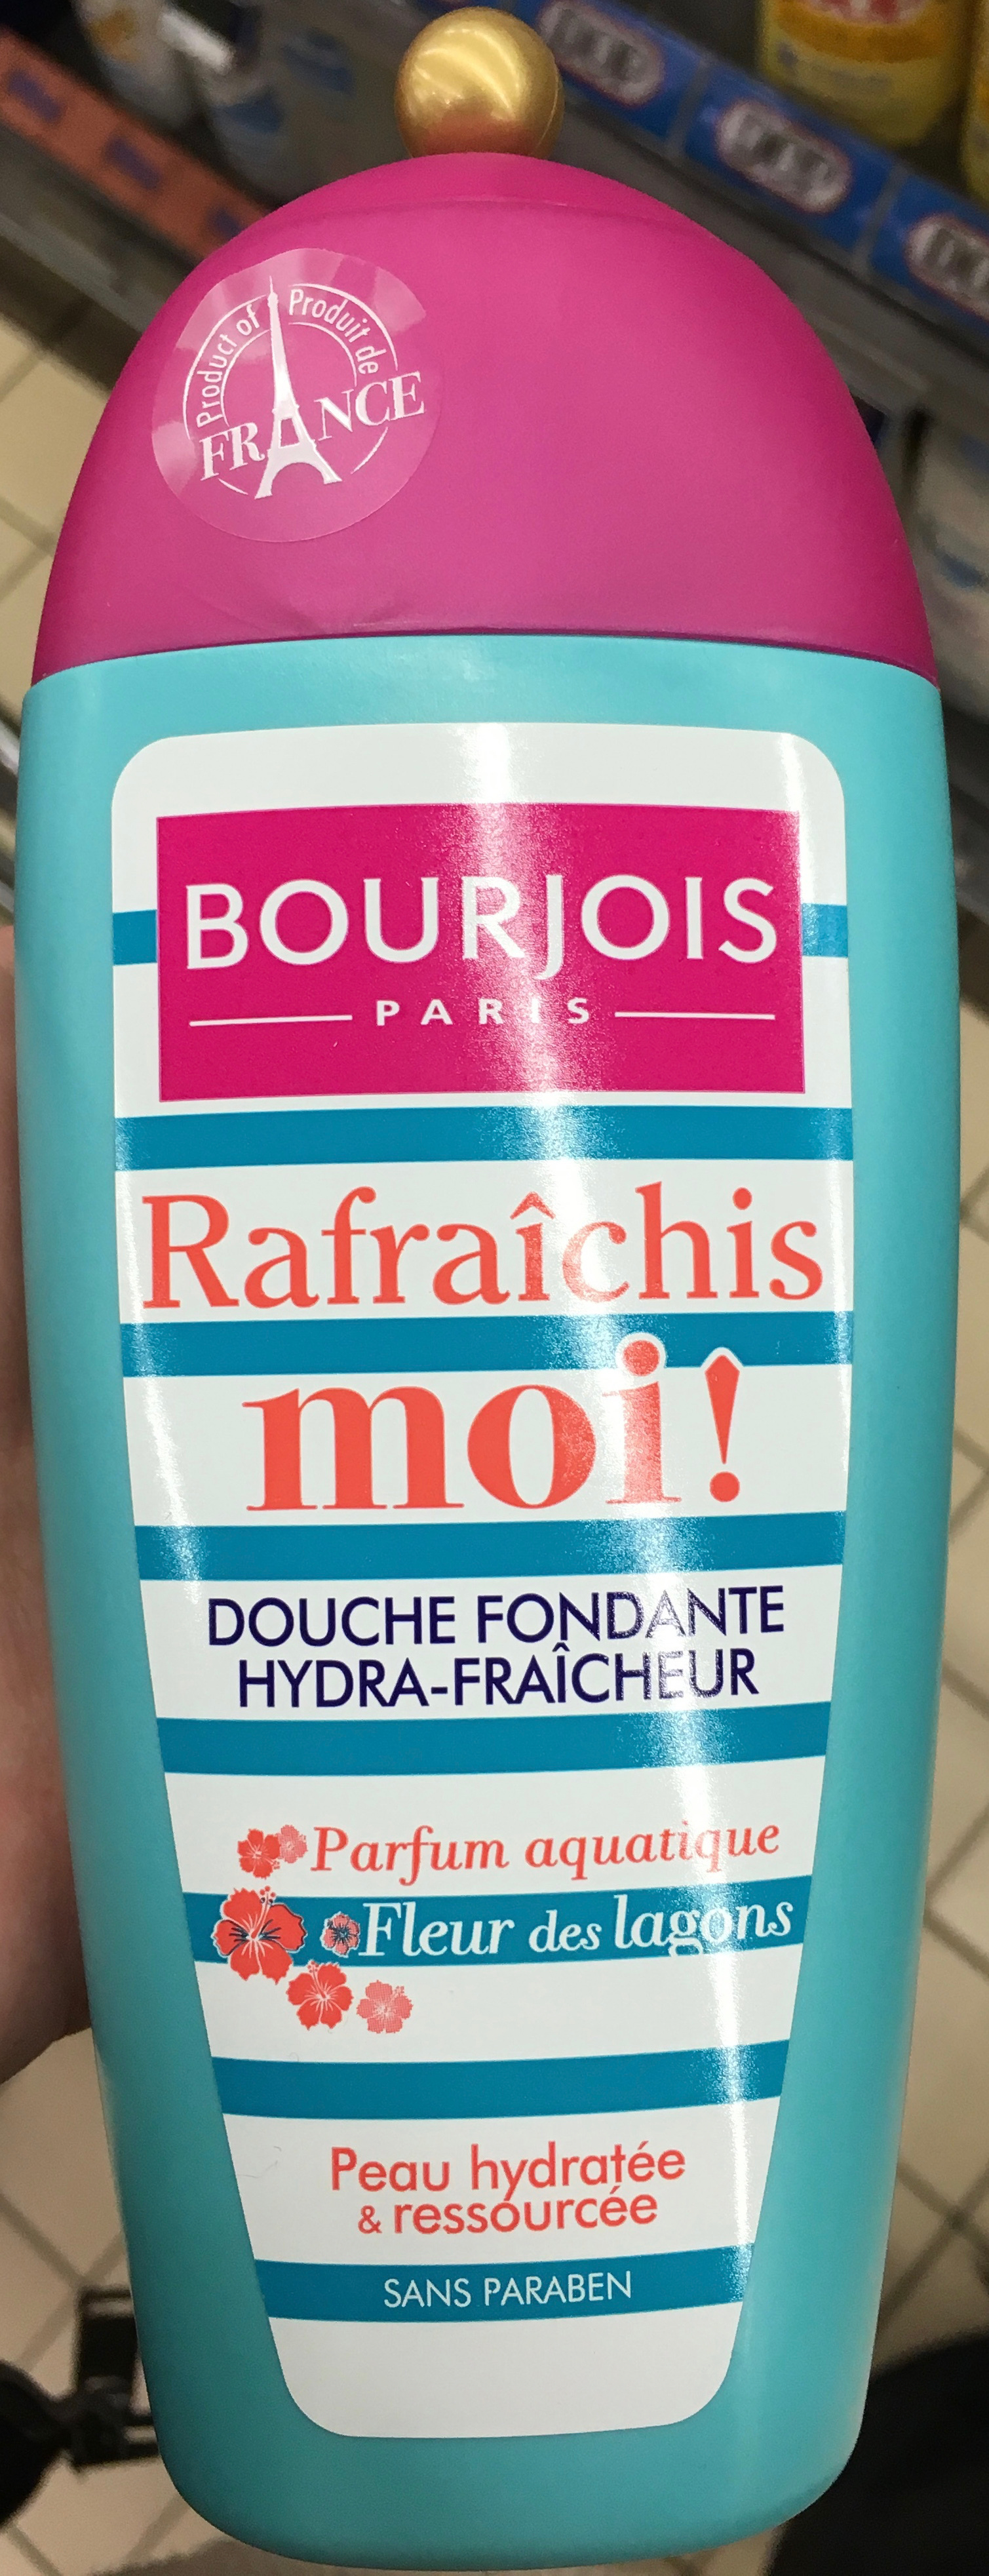 Rafraîchis moi ! Douche fondante hydra fraicheur Parfum aquatique Fleur des lagons - Product - fr